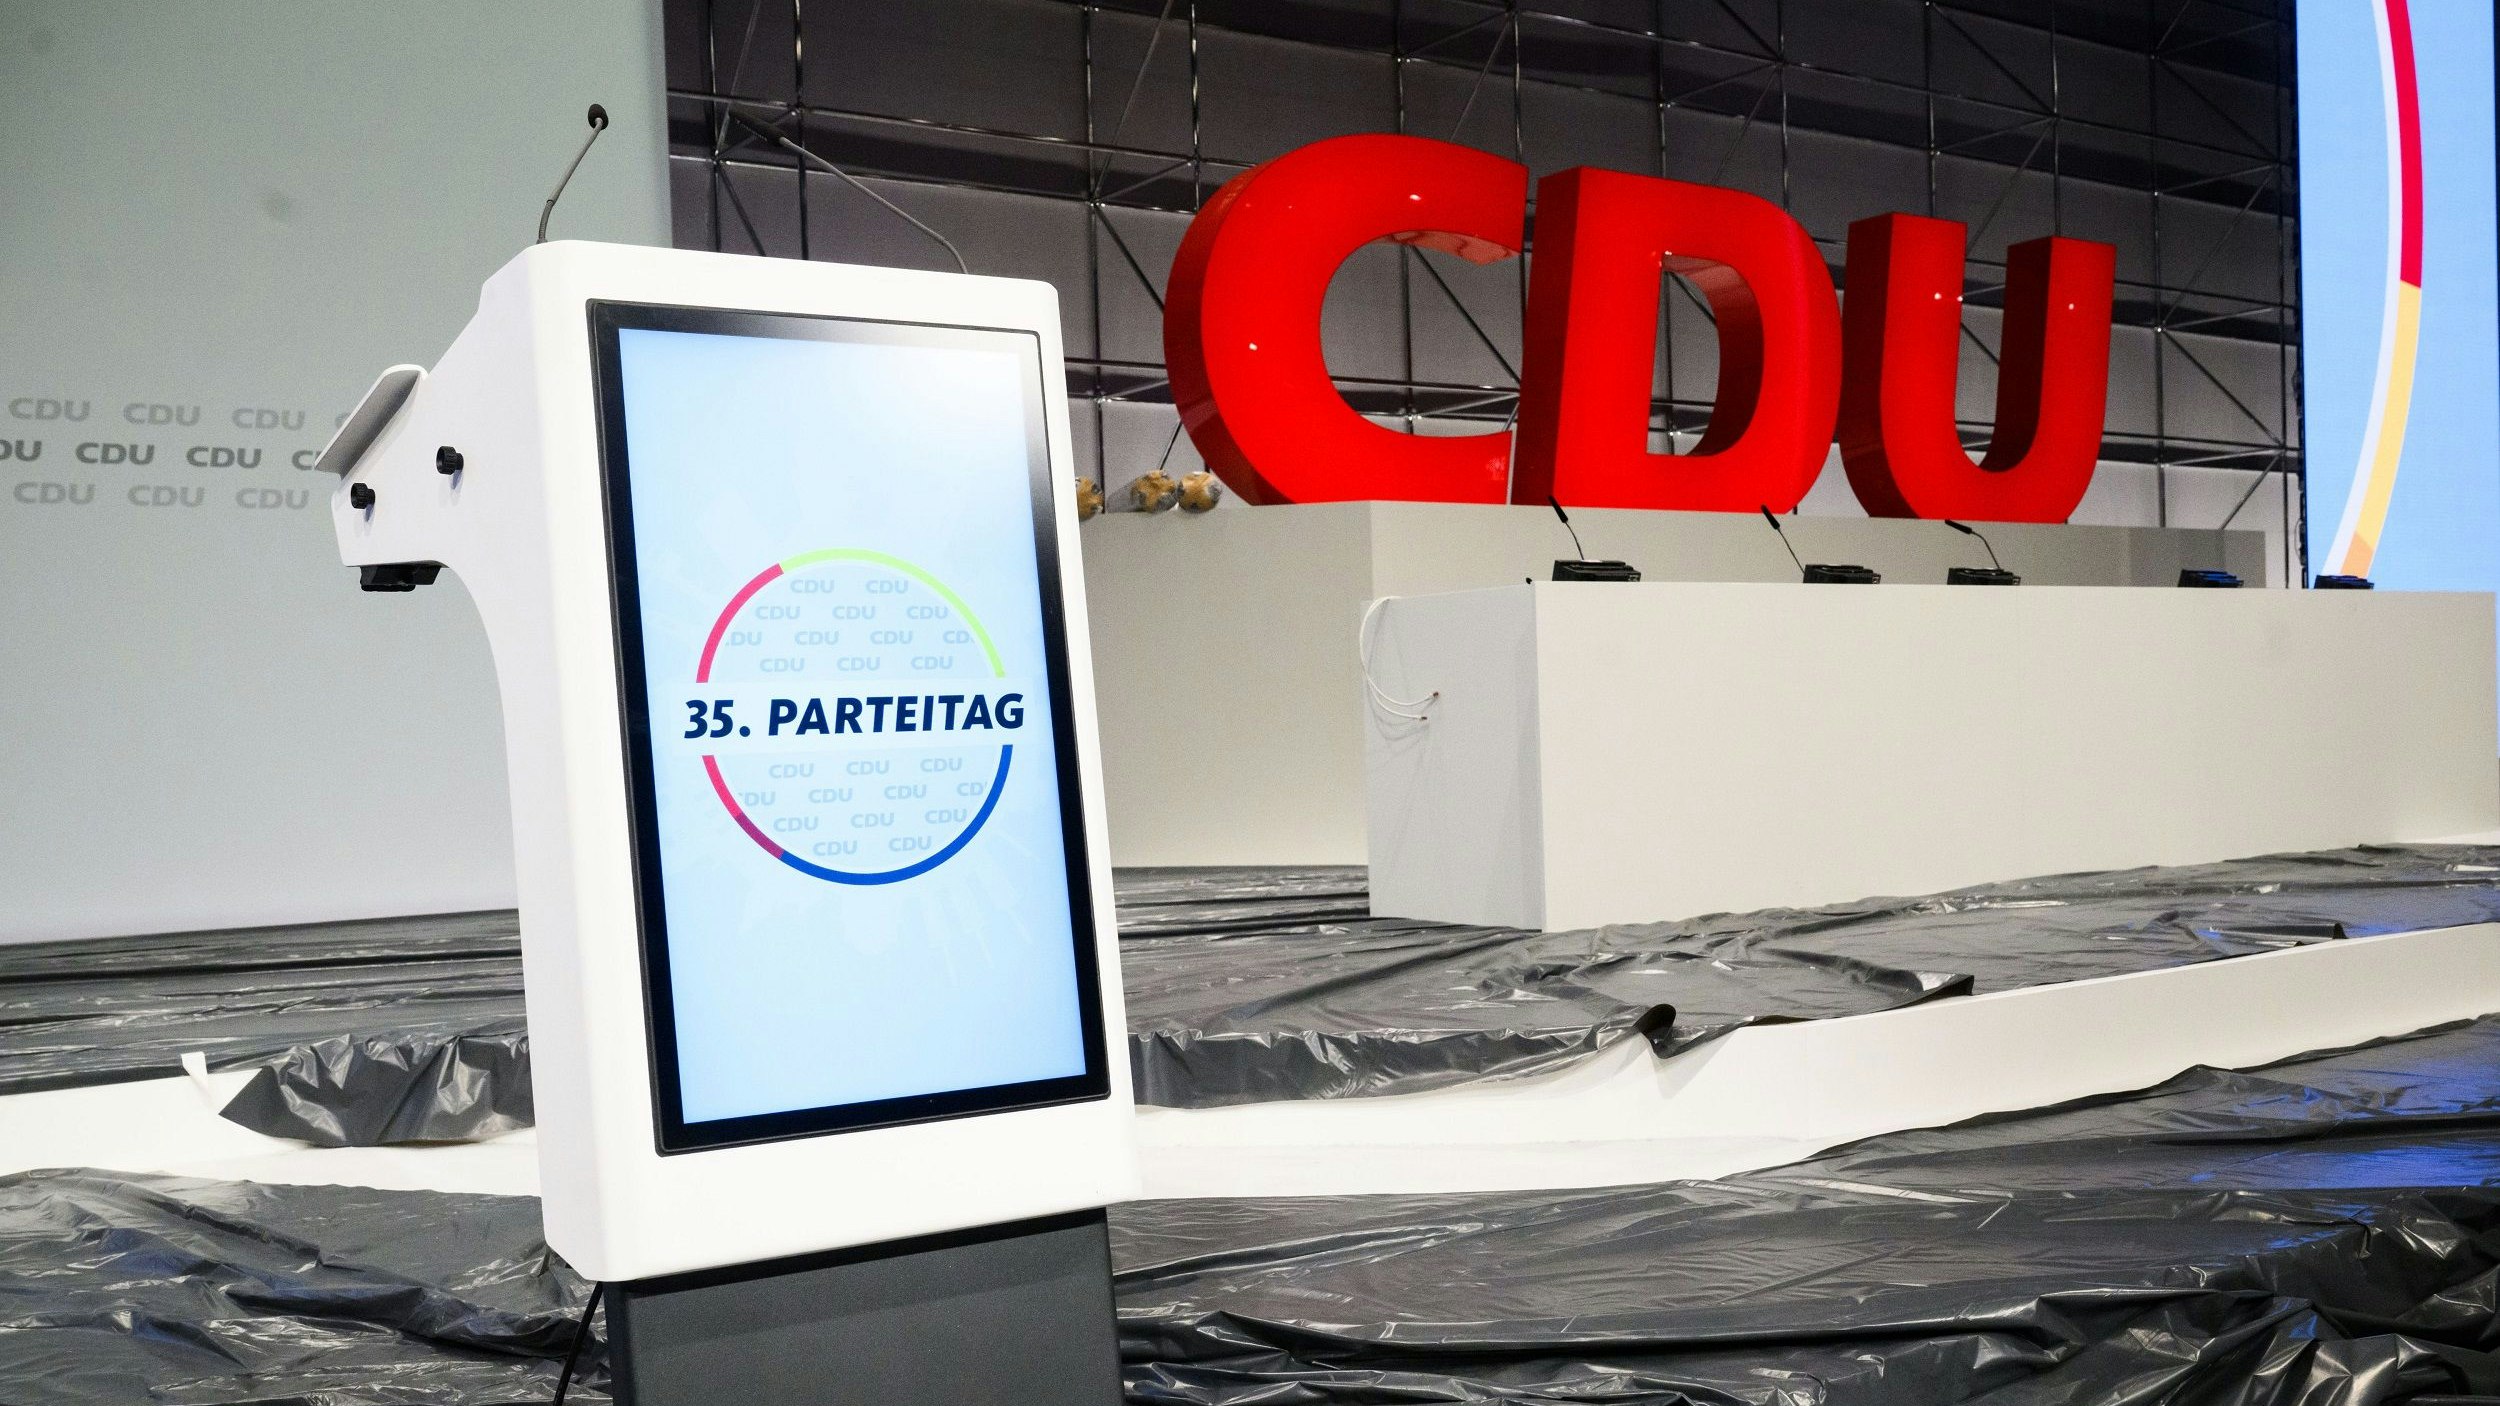 Schauplatz für Debatten: Die Bühne des CDU-Bundesparteitags in Hannover. Foto: dpa / Stratenschulte